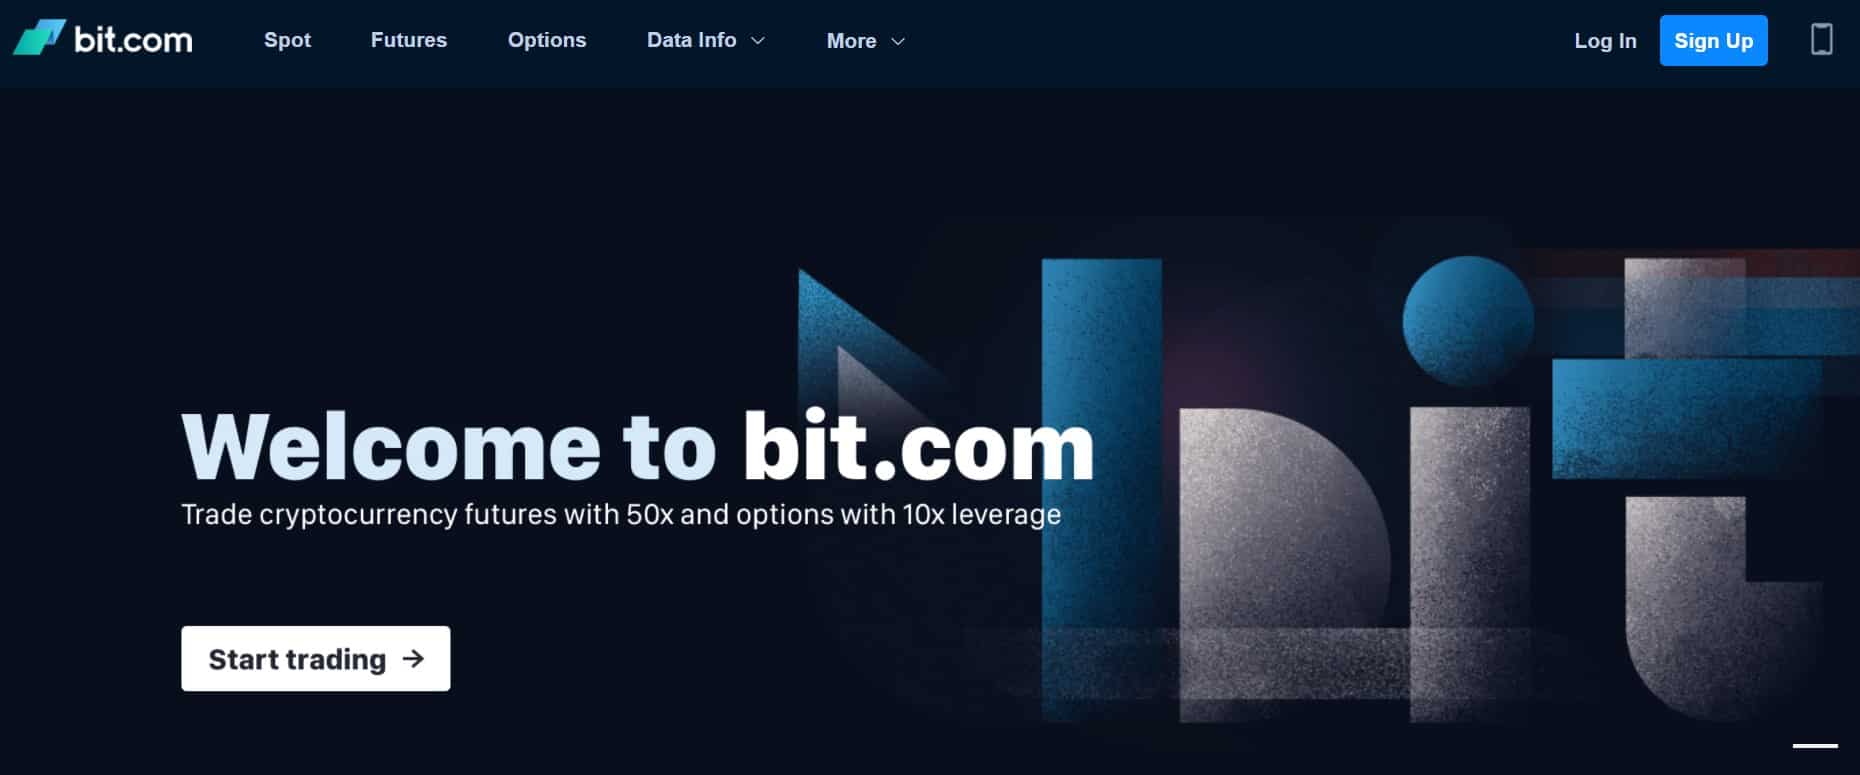 Bit.com website